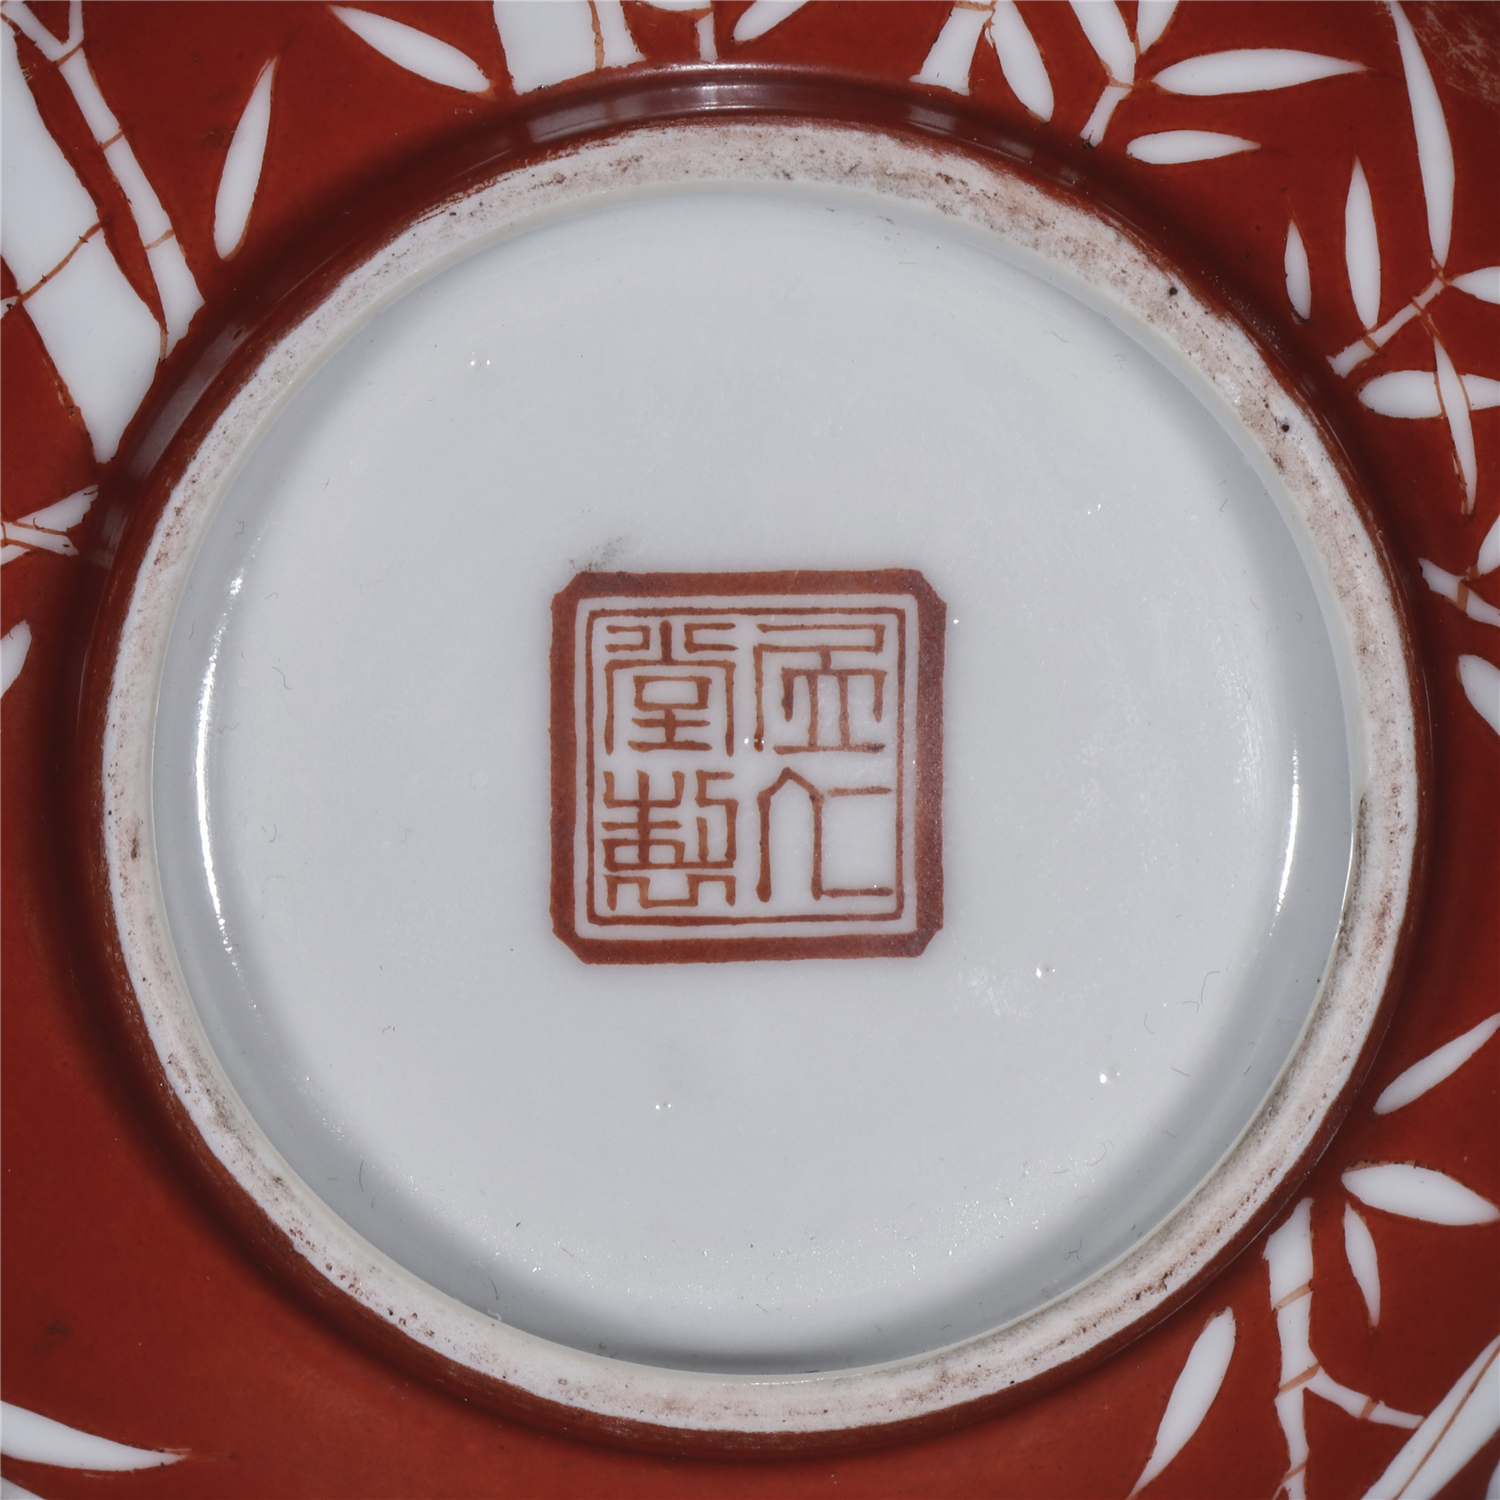 居仁堂制款 珊瑚红釉留白竹纹碗